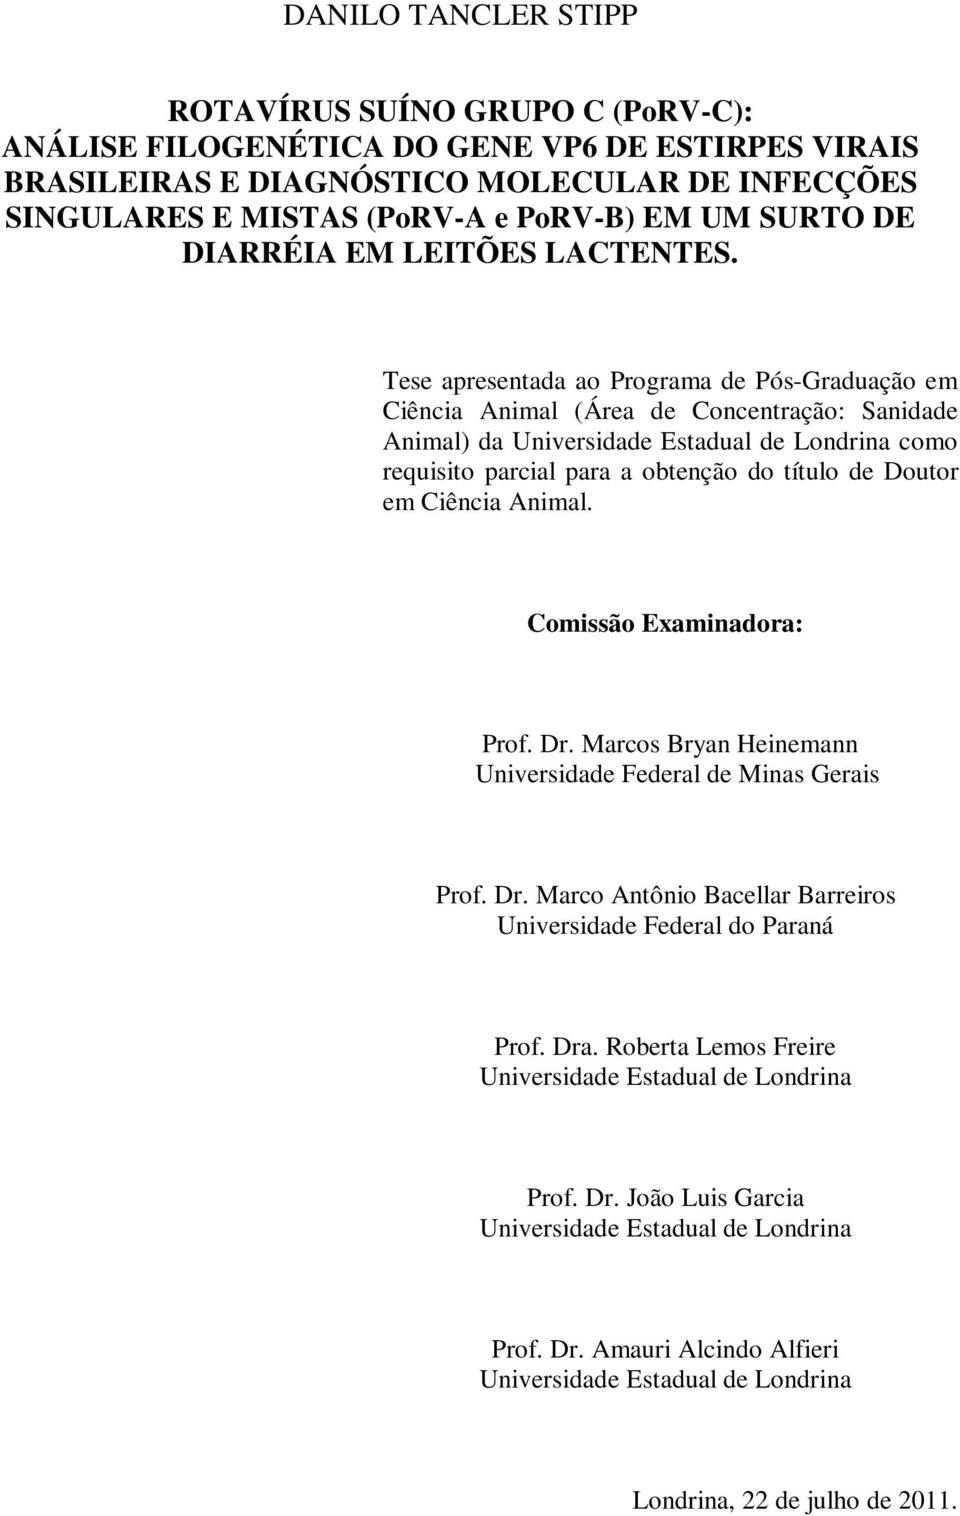 Tese apresentada ao Programa de Pós-Graduação em Ciência Animal (Área de Concentração: Sanidade Animal) da Universidade Estadual de Londrina como requisito parcial para a obtenção do título de Doutor